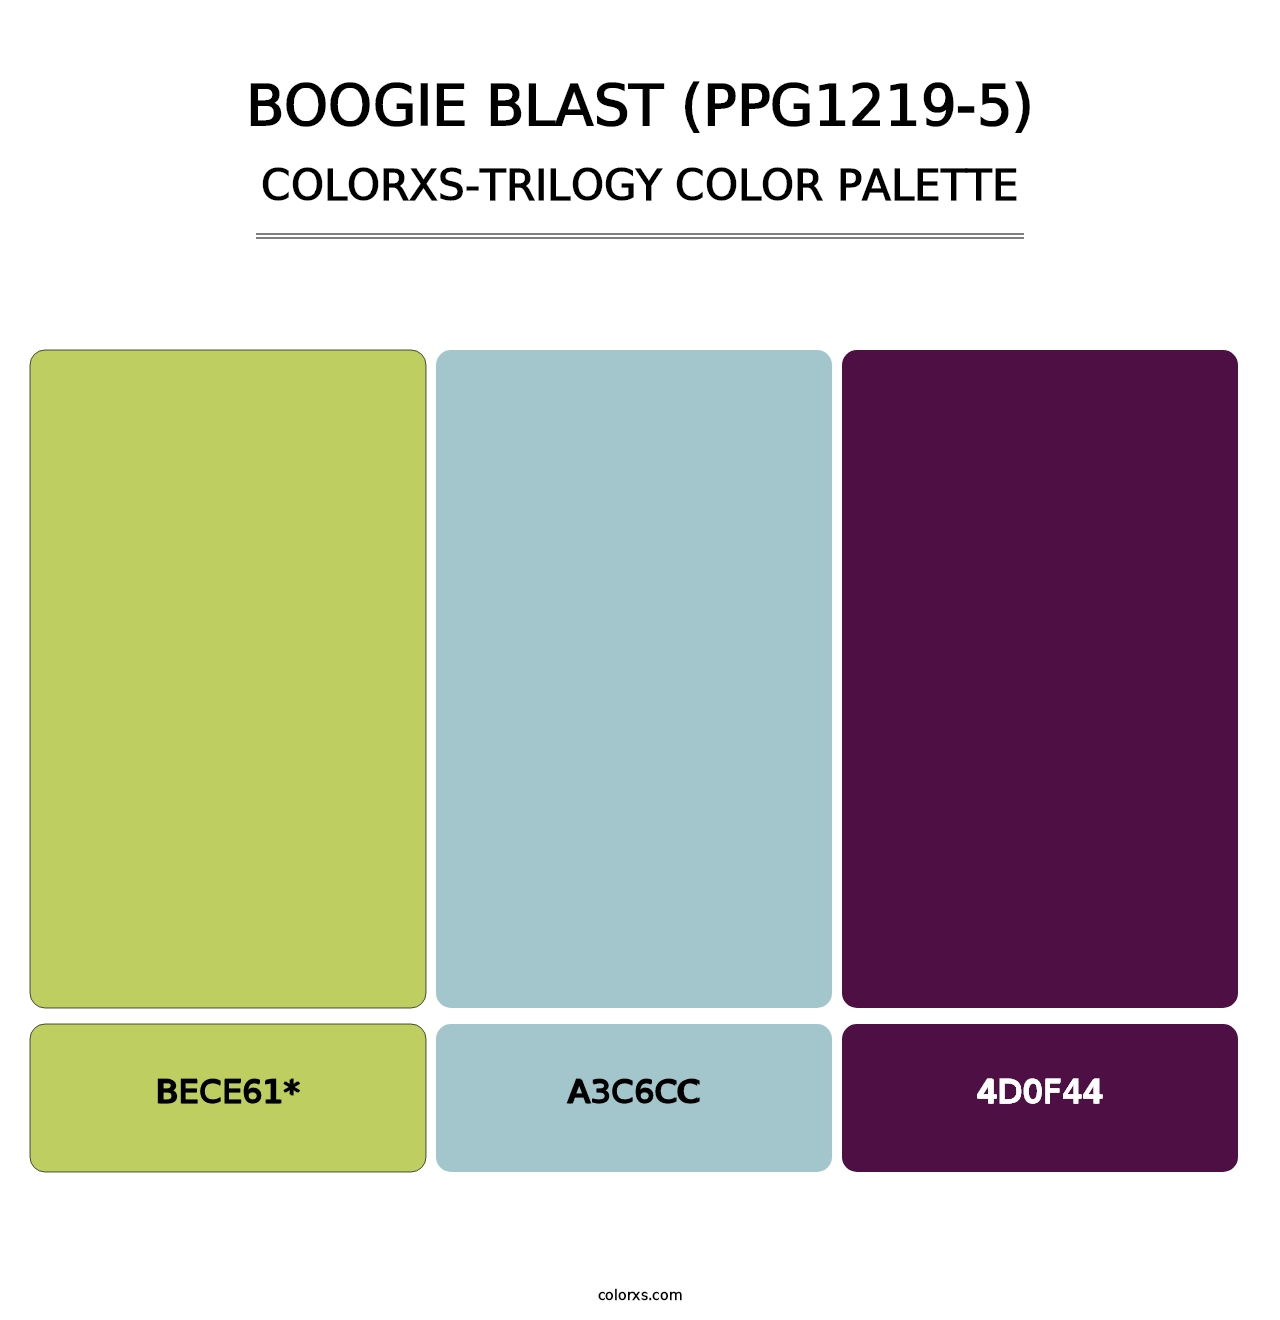 Boogie Blast (PPG1219-5) - Colorxs Trilogy Palette